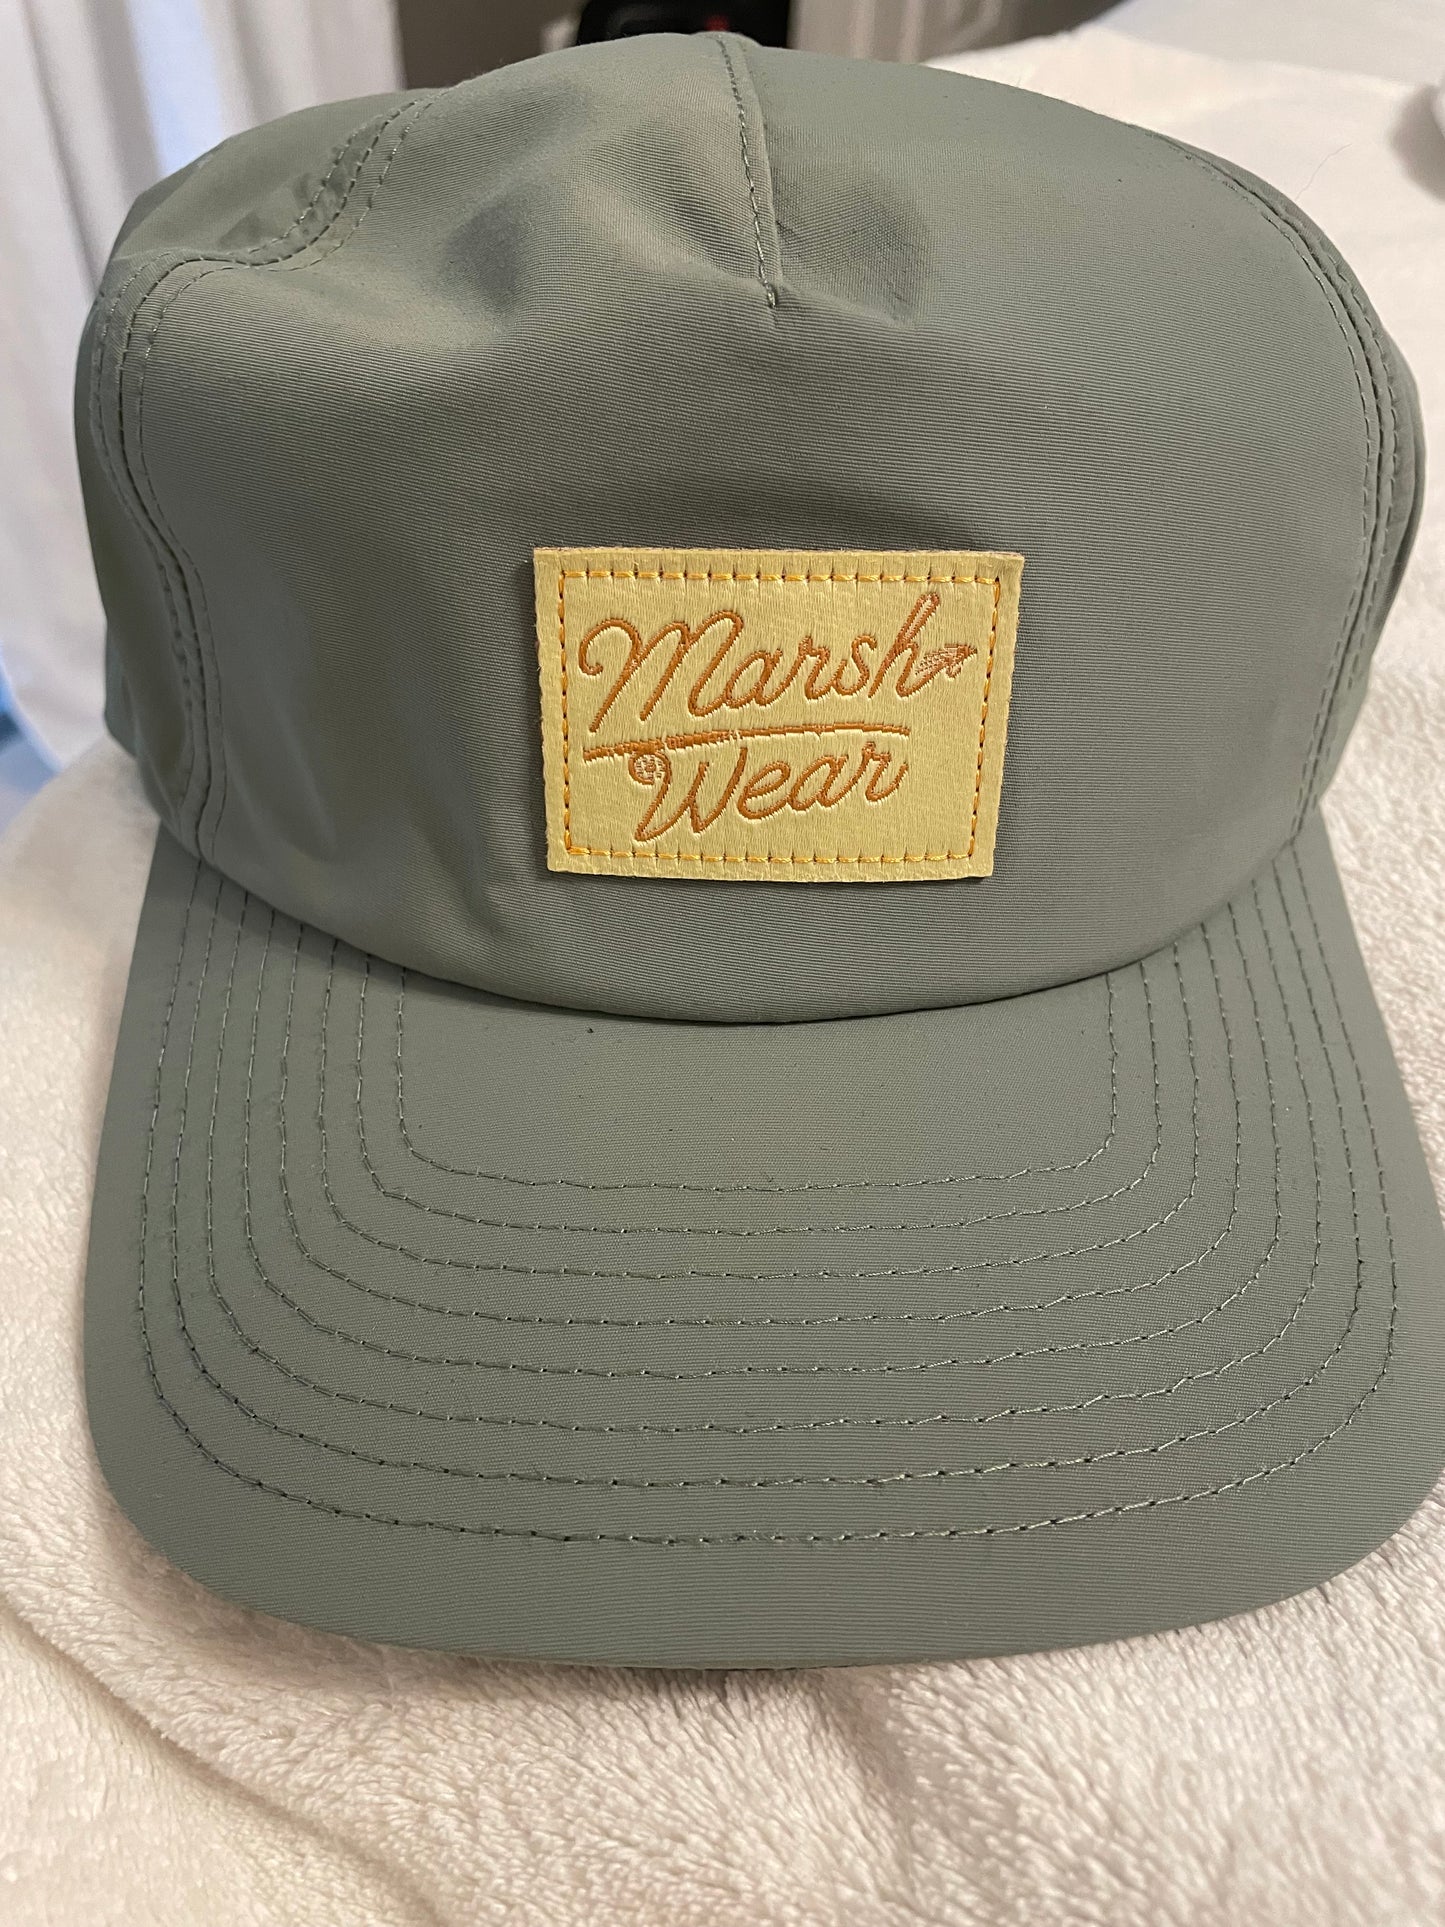 Marsh Wear Pitch Hat - MWC4021 - BHI